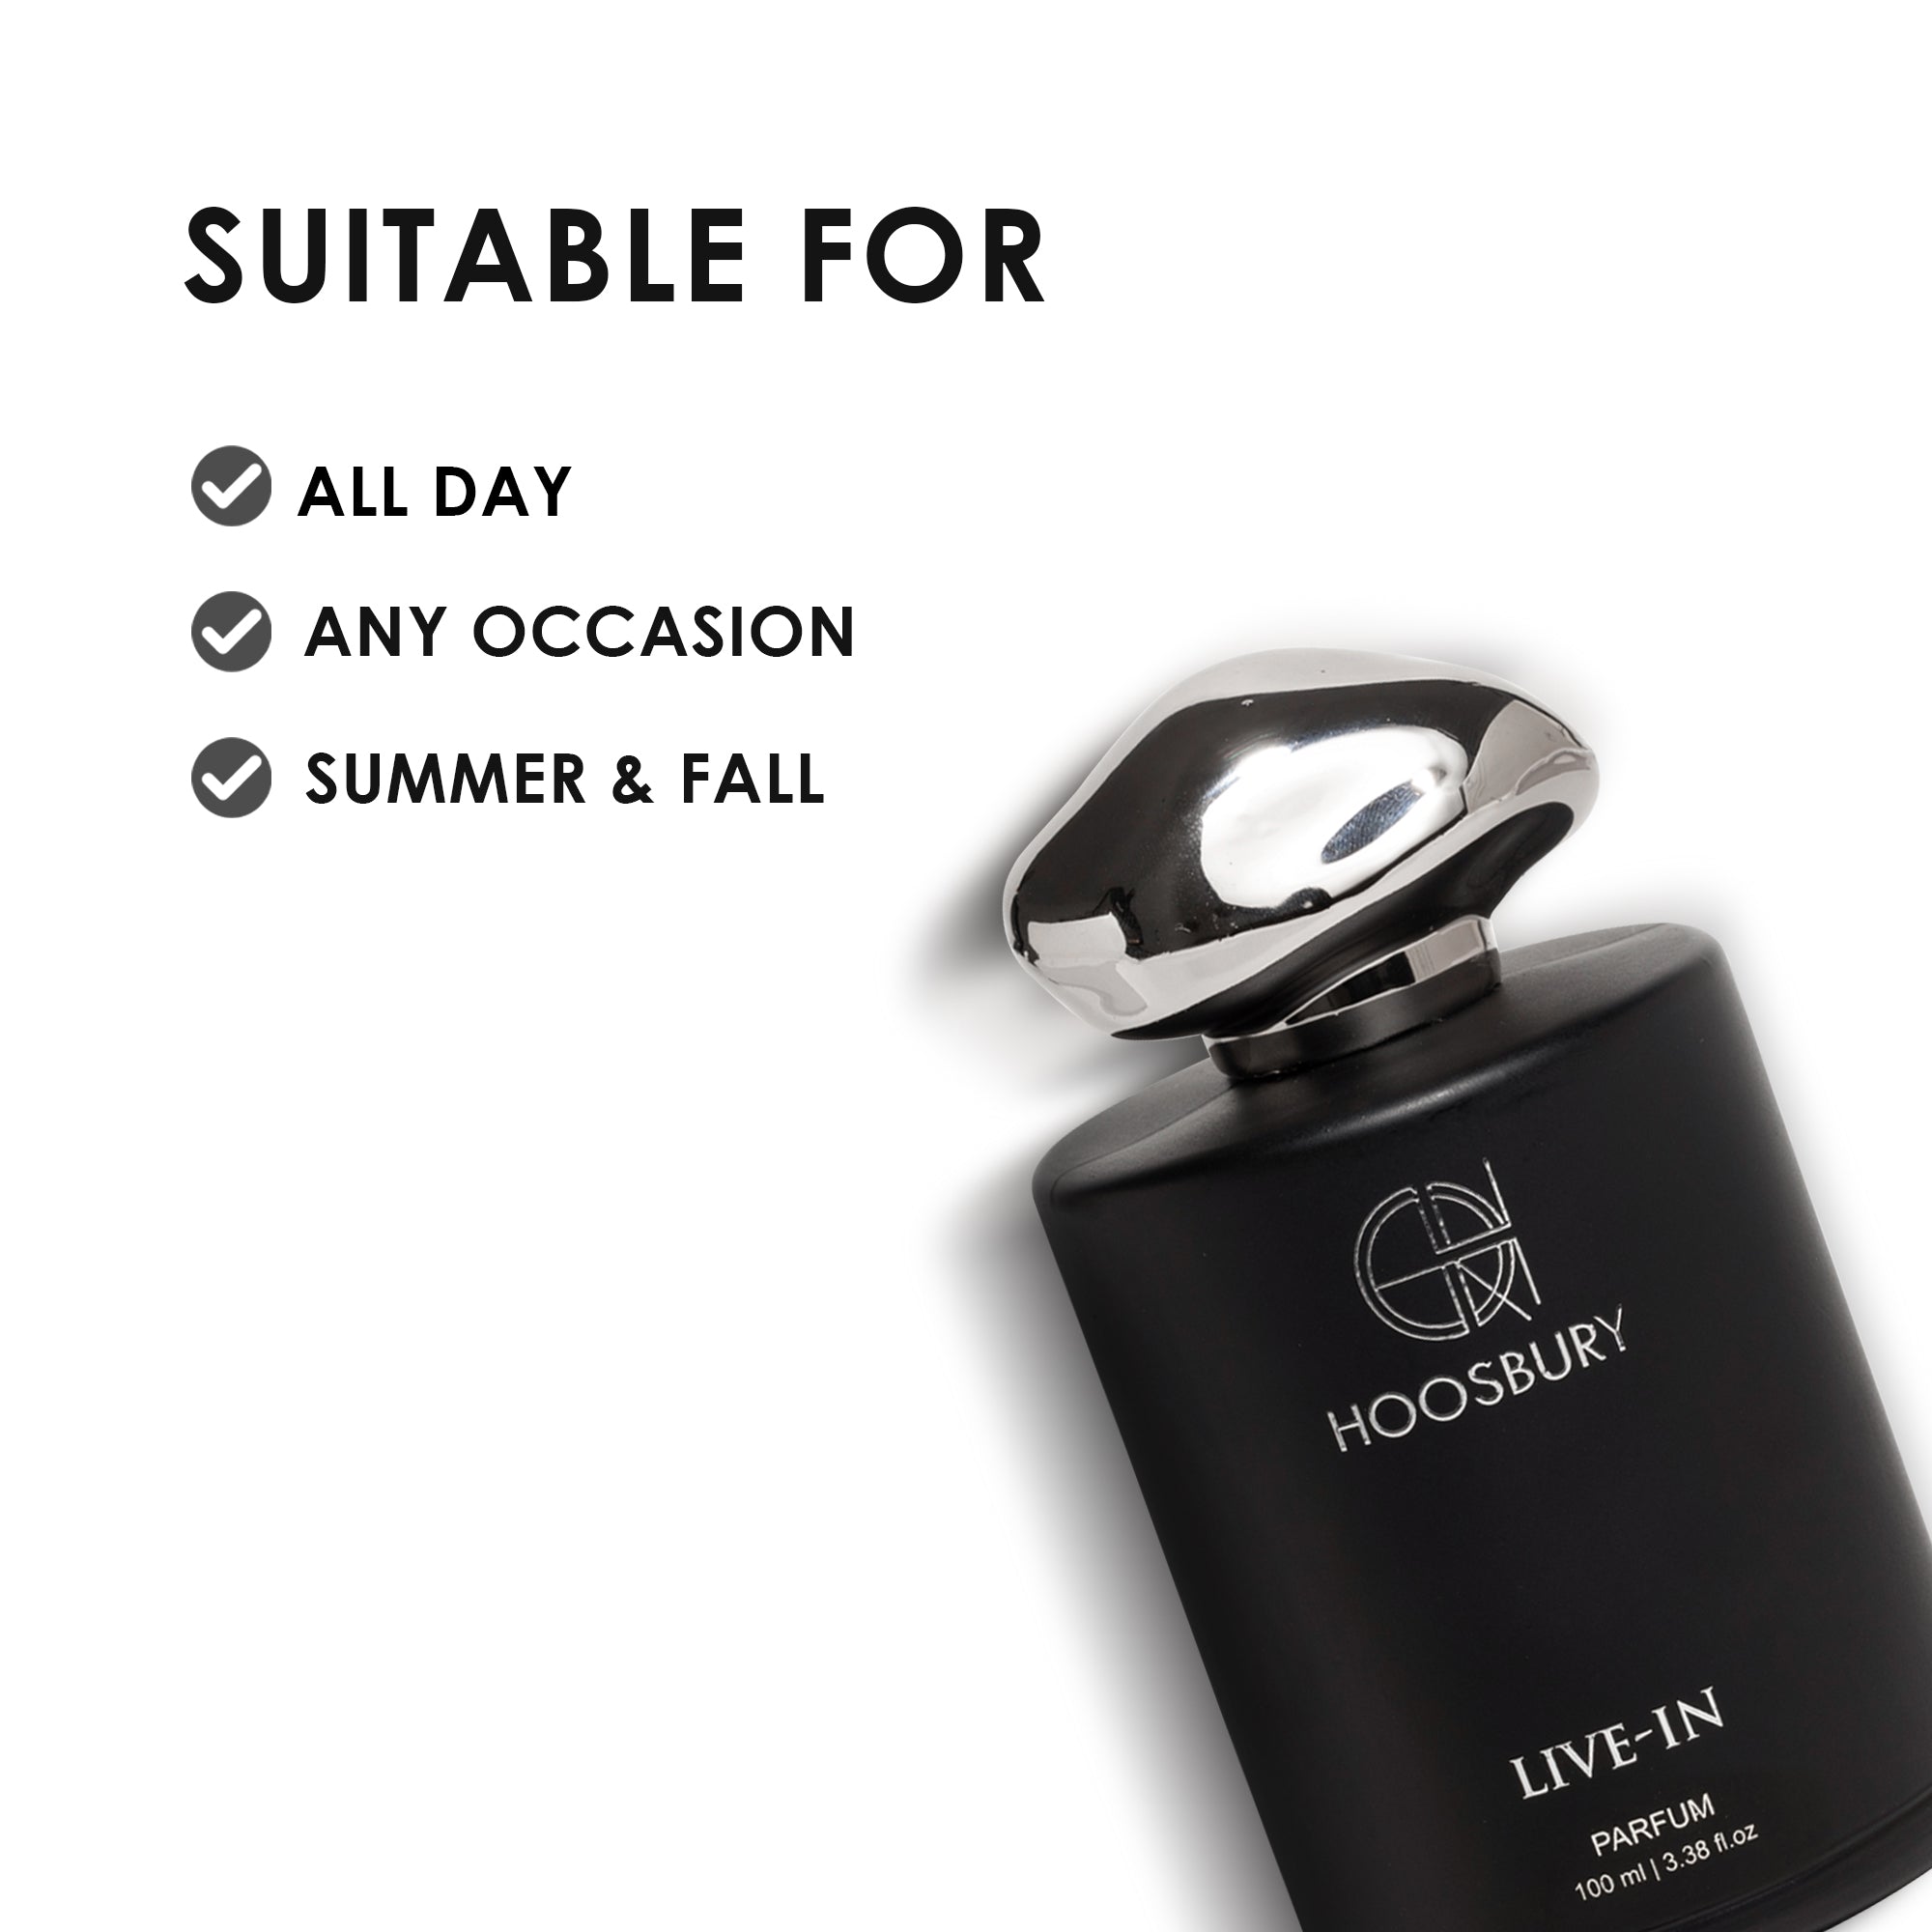 Live-In Unisex Parfum - 100ml